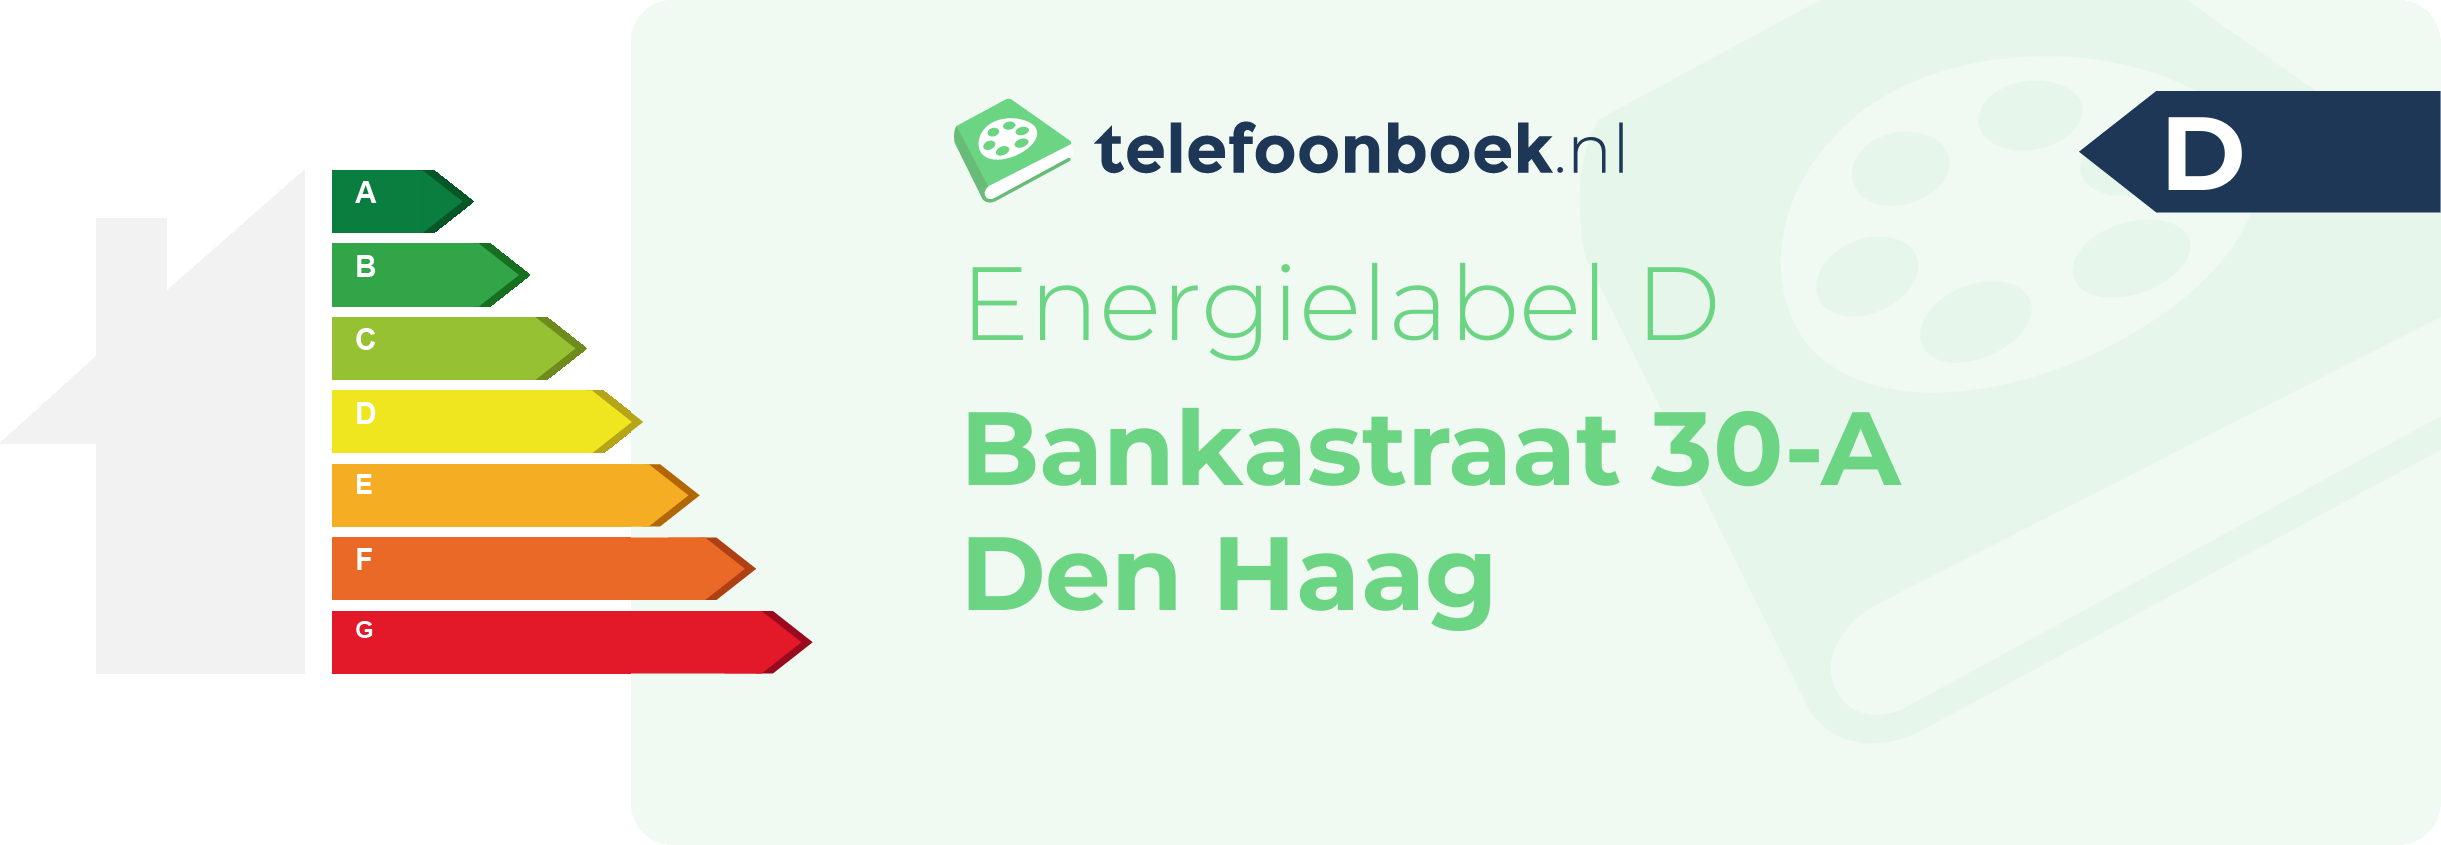 Energielabel Bankastraat 30-A Den Haag